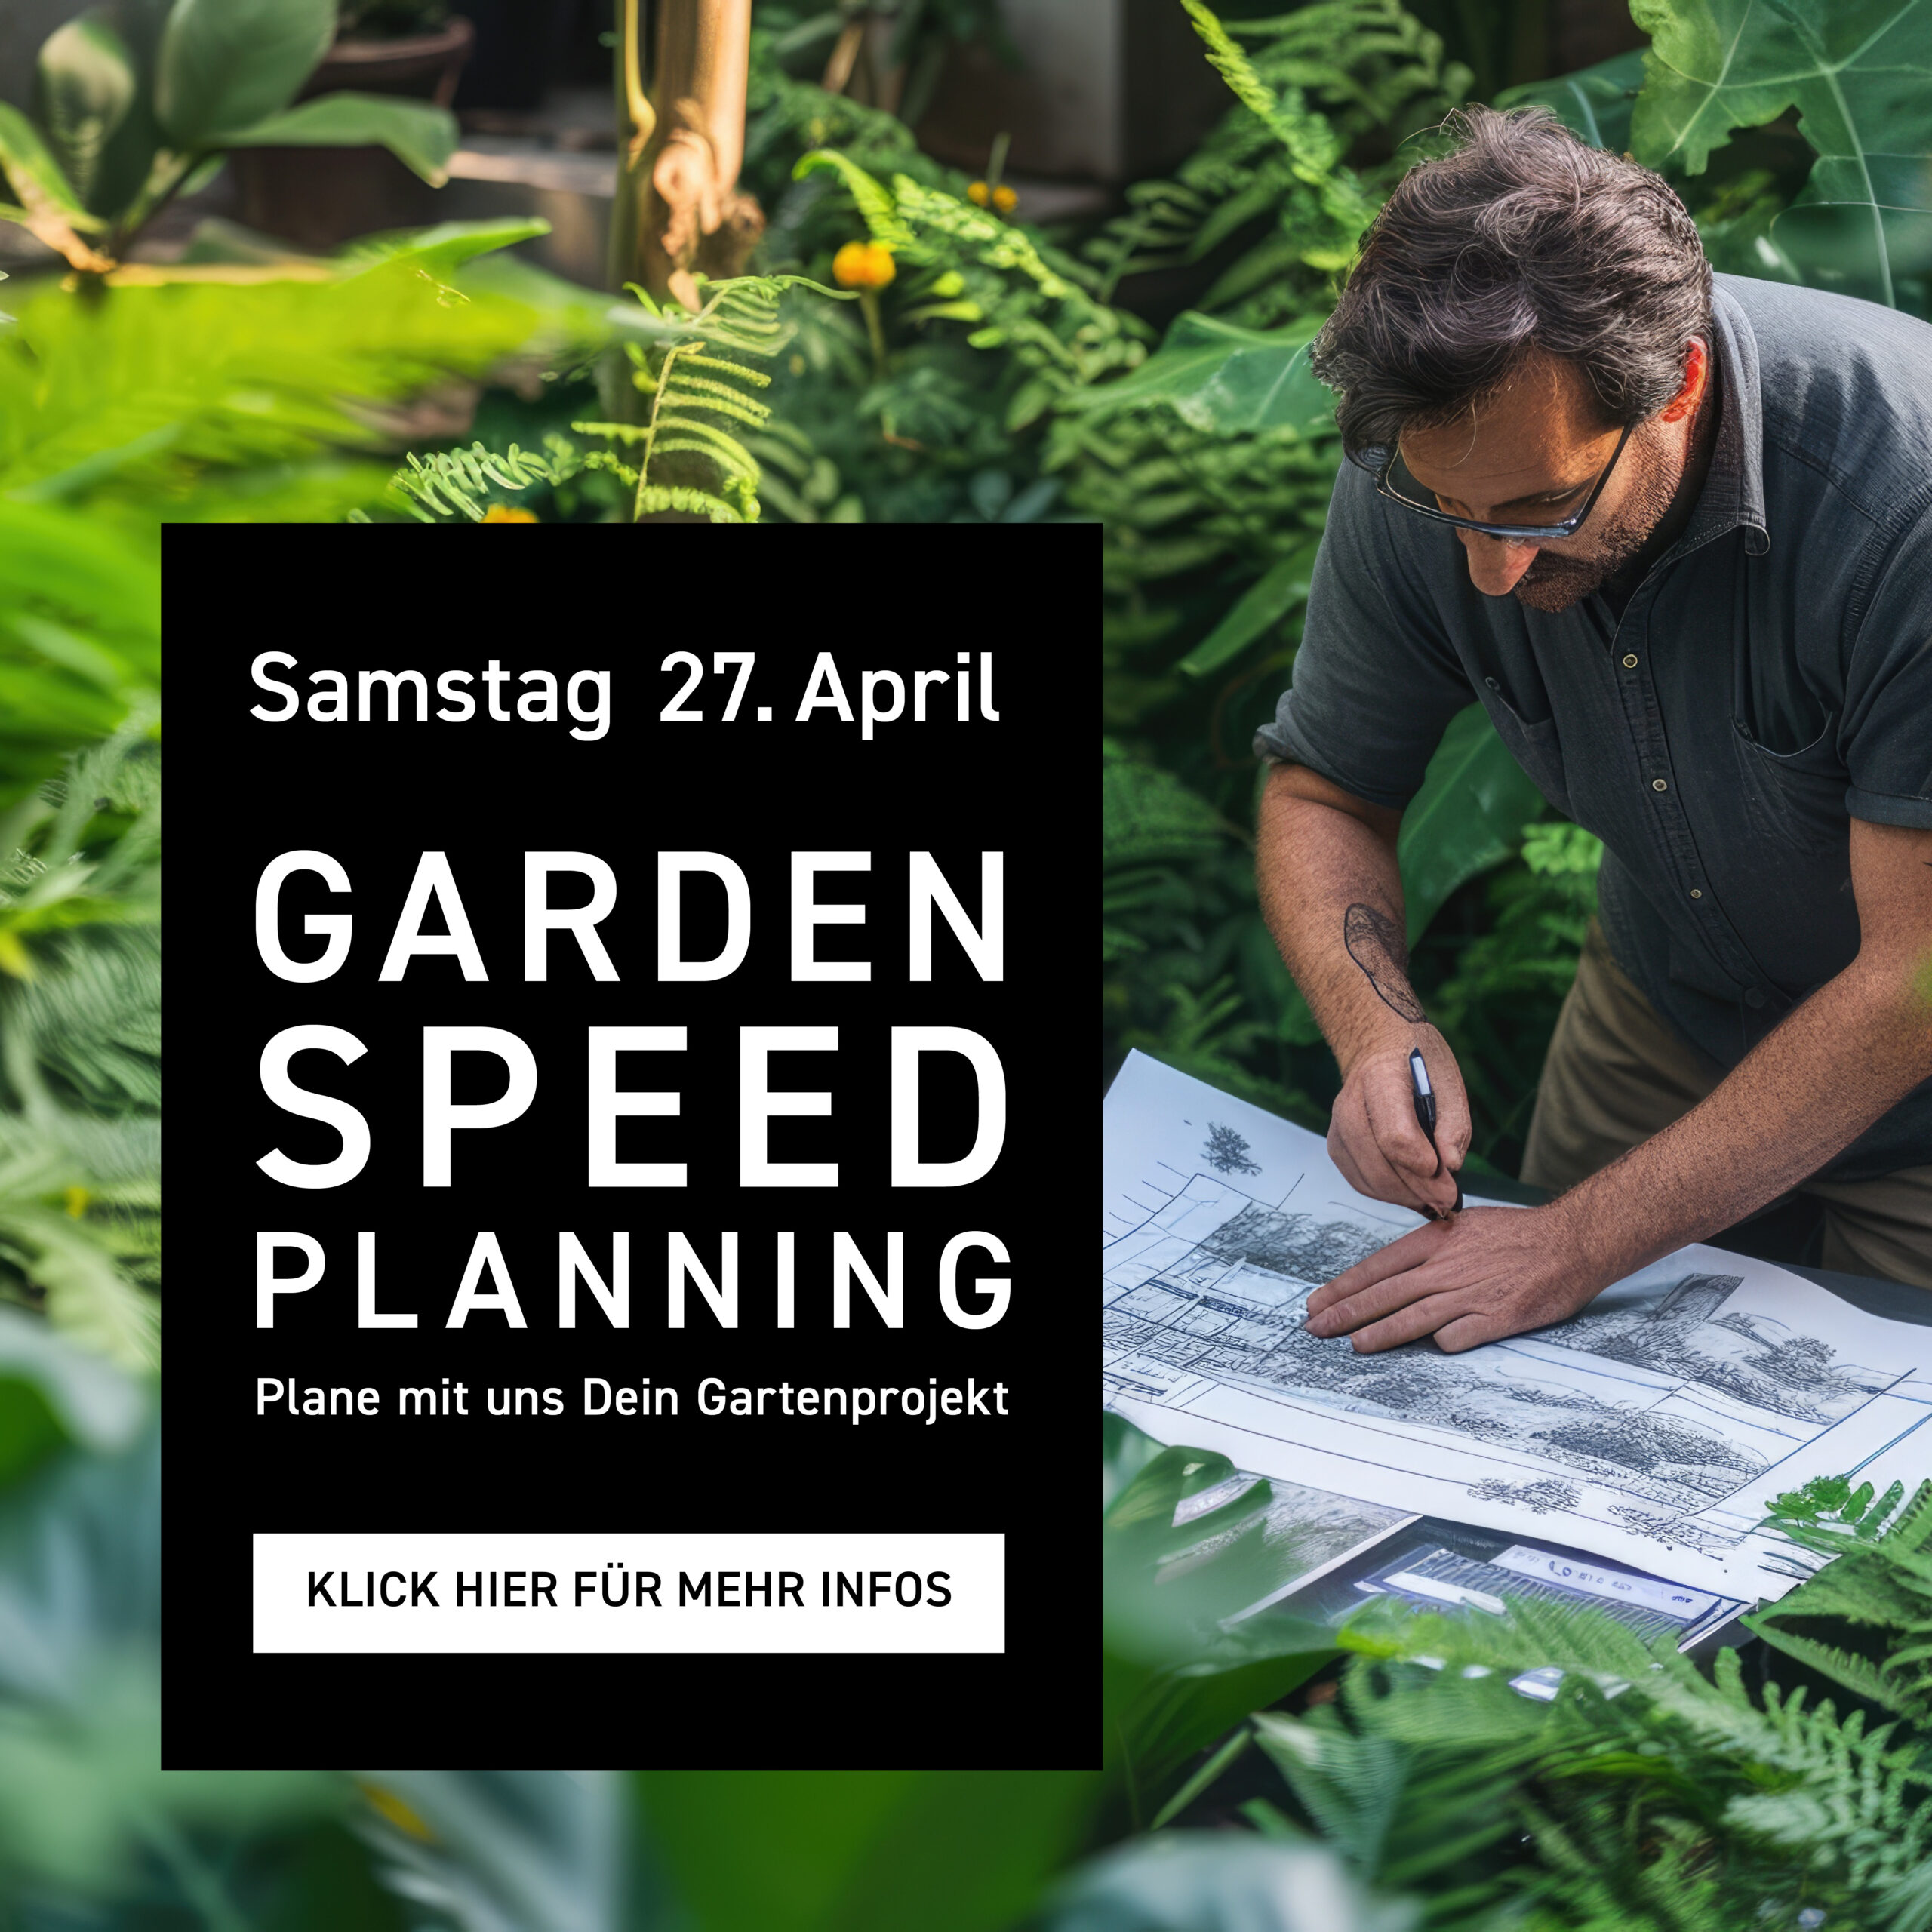 Garden-Speed-Planning im Lebensraum Garten